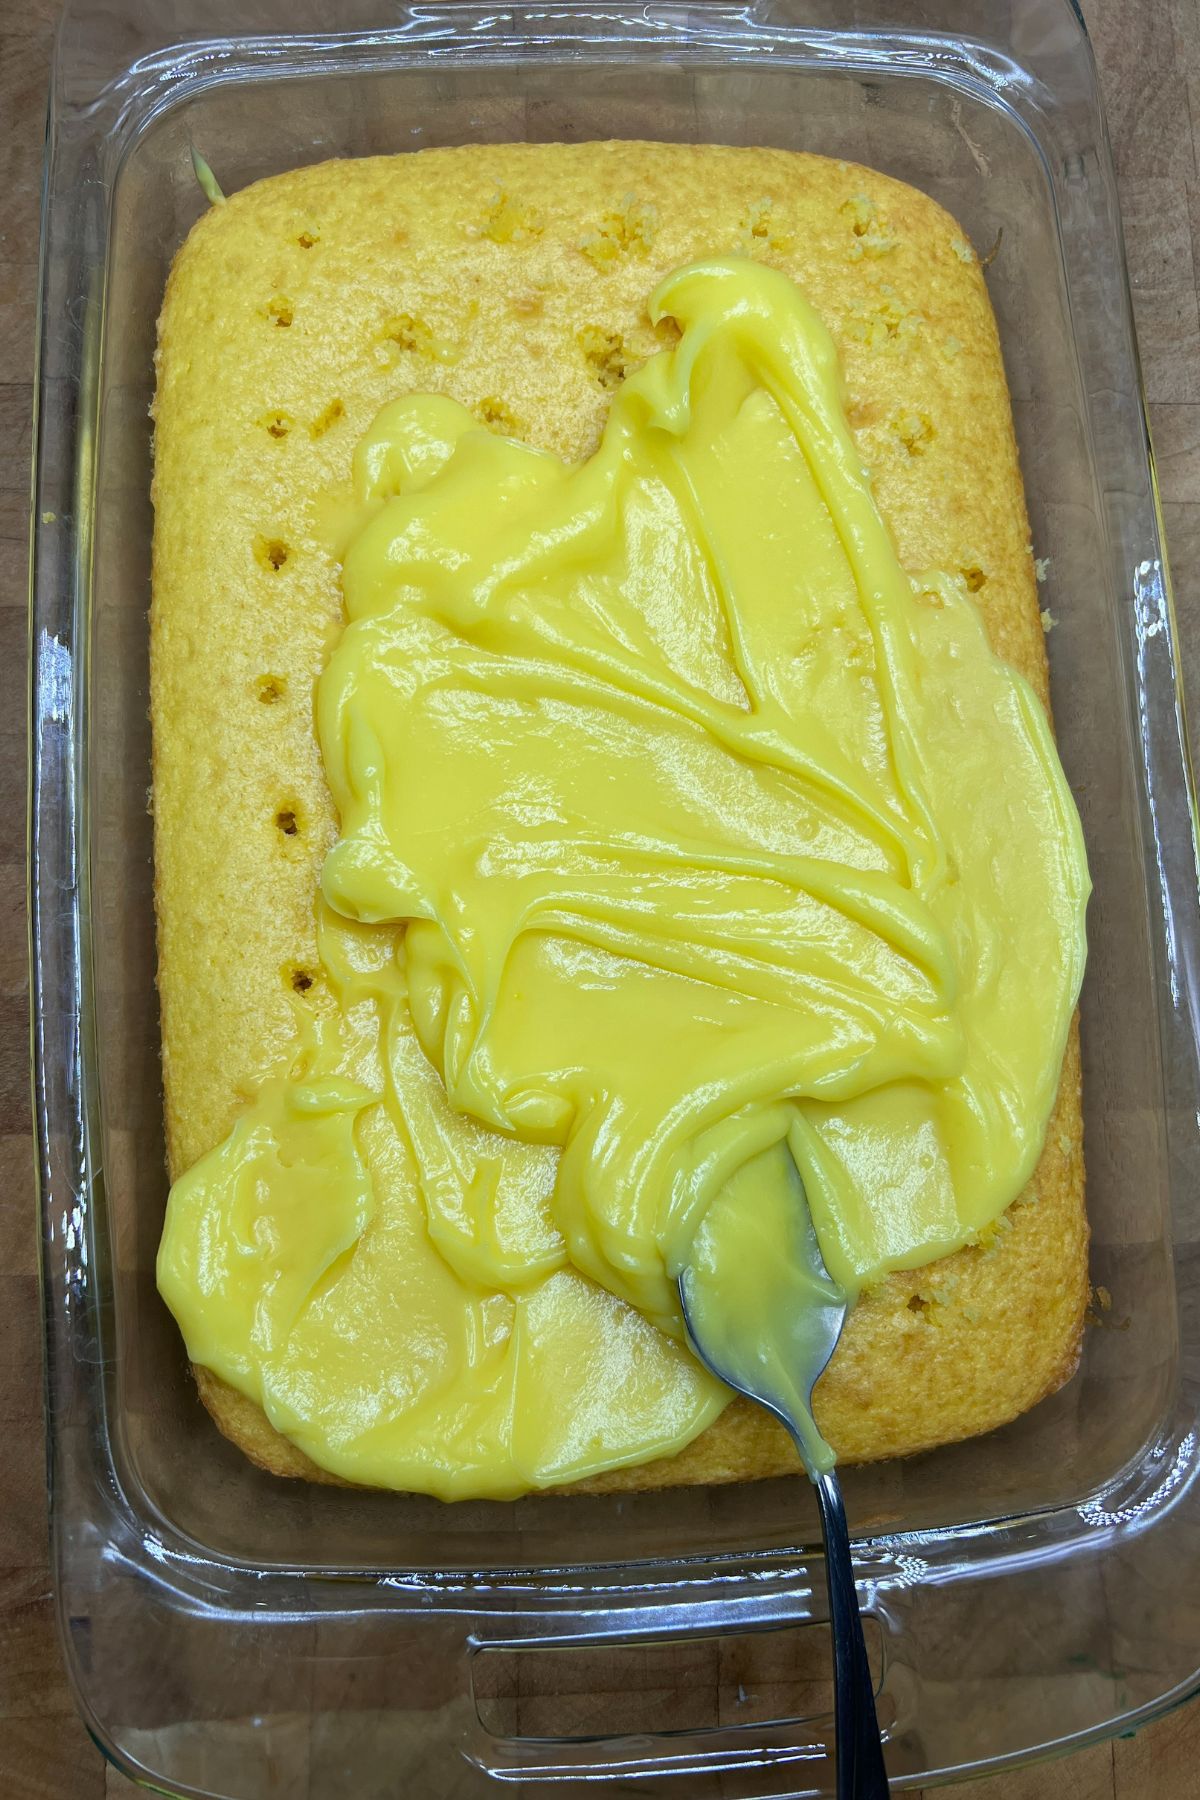 Spreading lemon pudding on top of lemon cake.